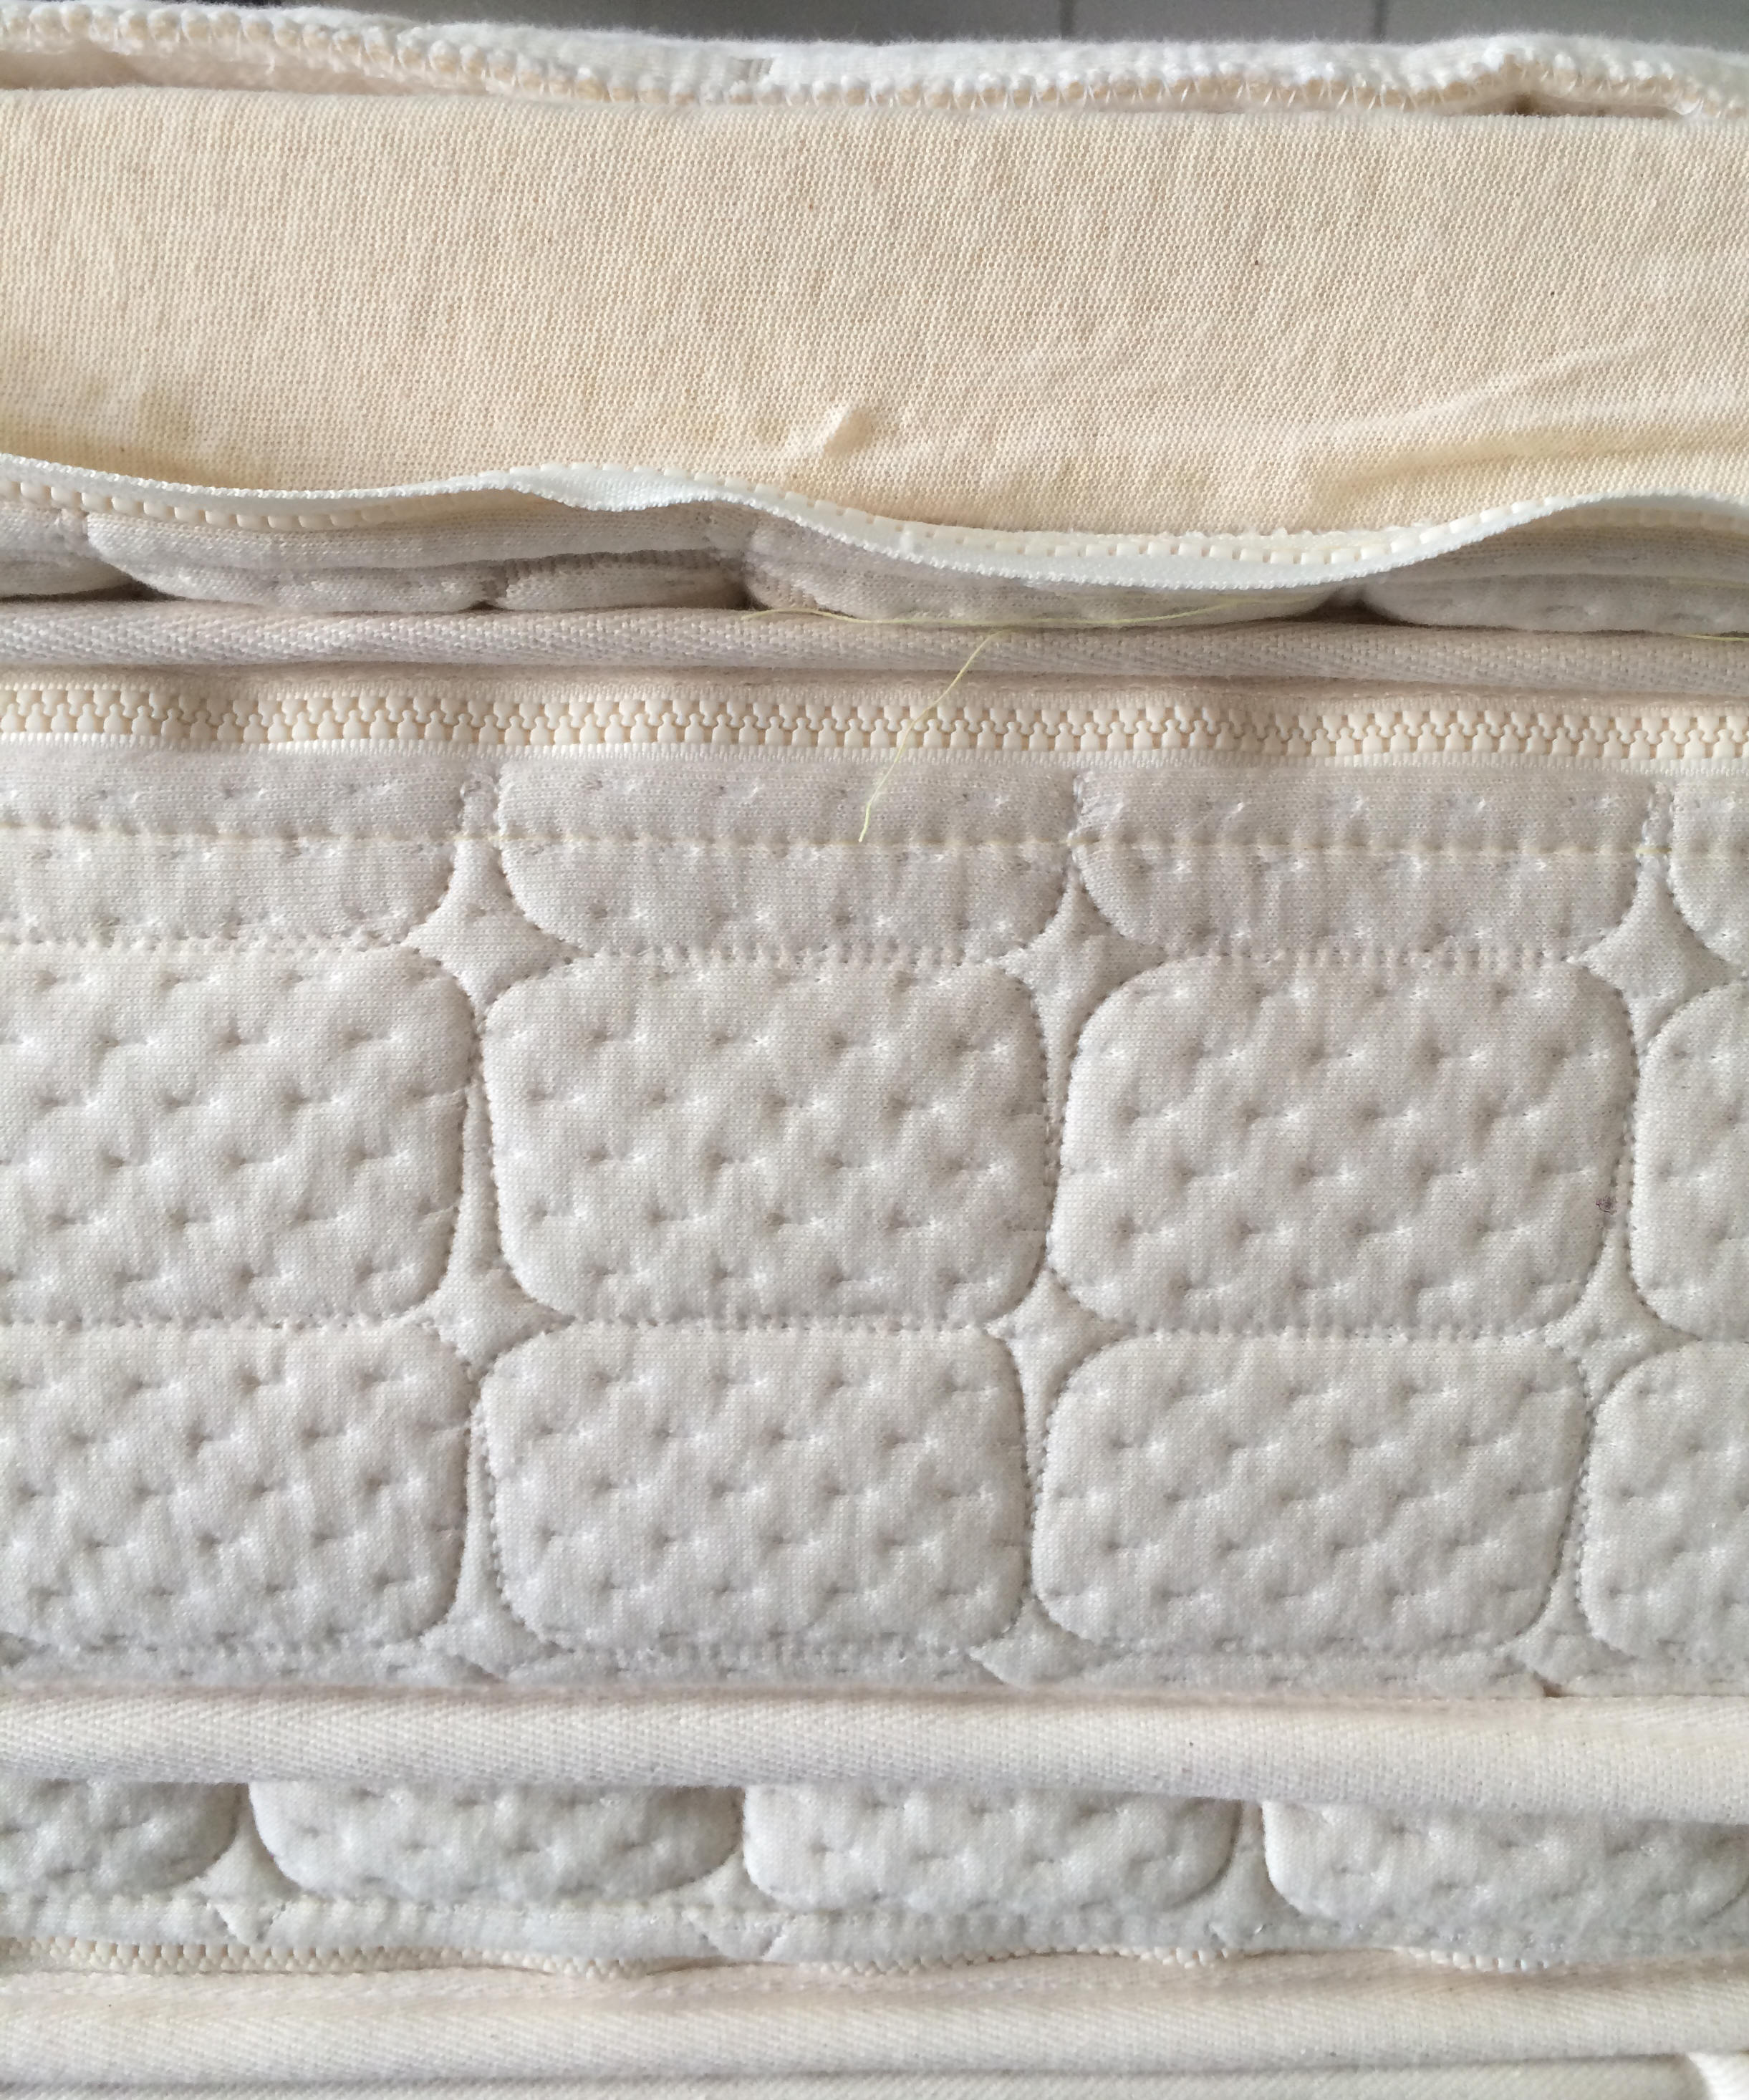 Gilbert organic natural latex mattress